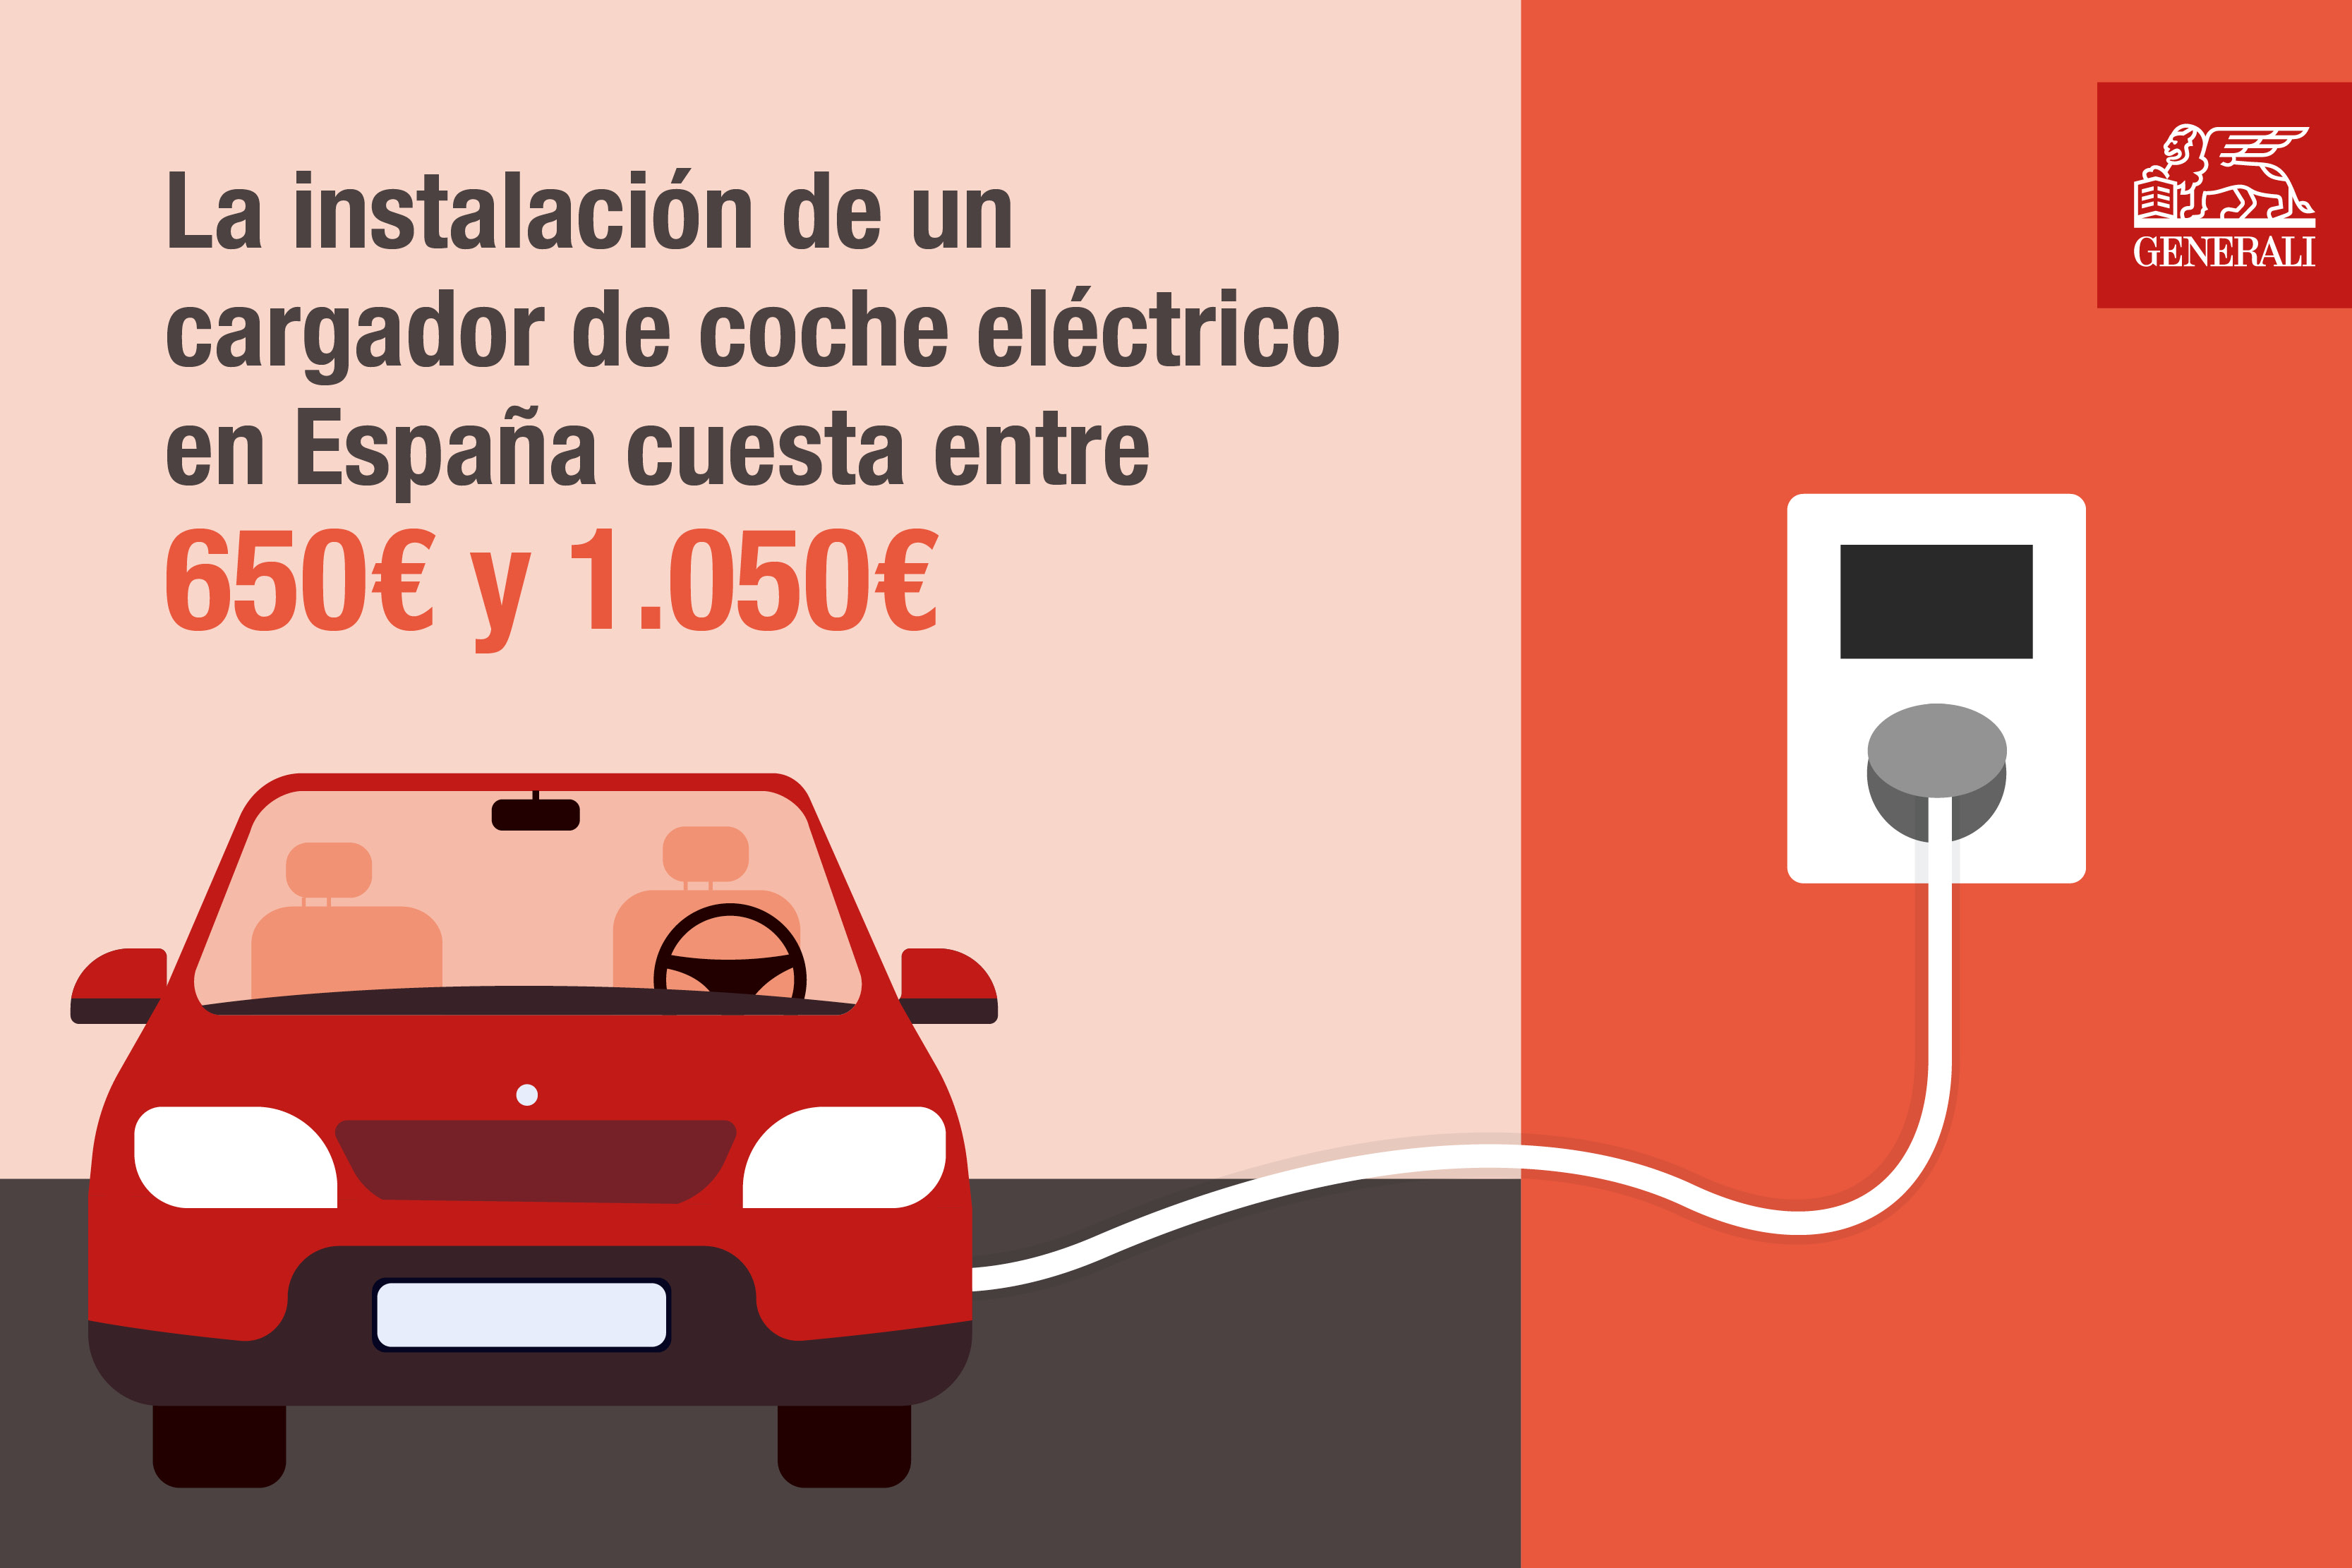 Cuánto cuesta un cable de carga para un coche eléctrico?